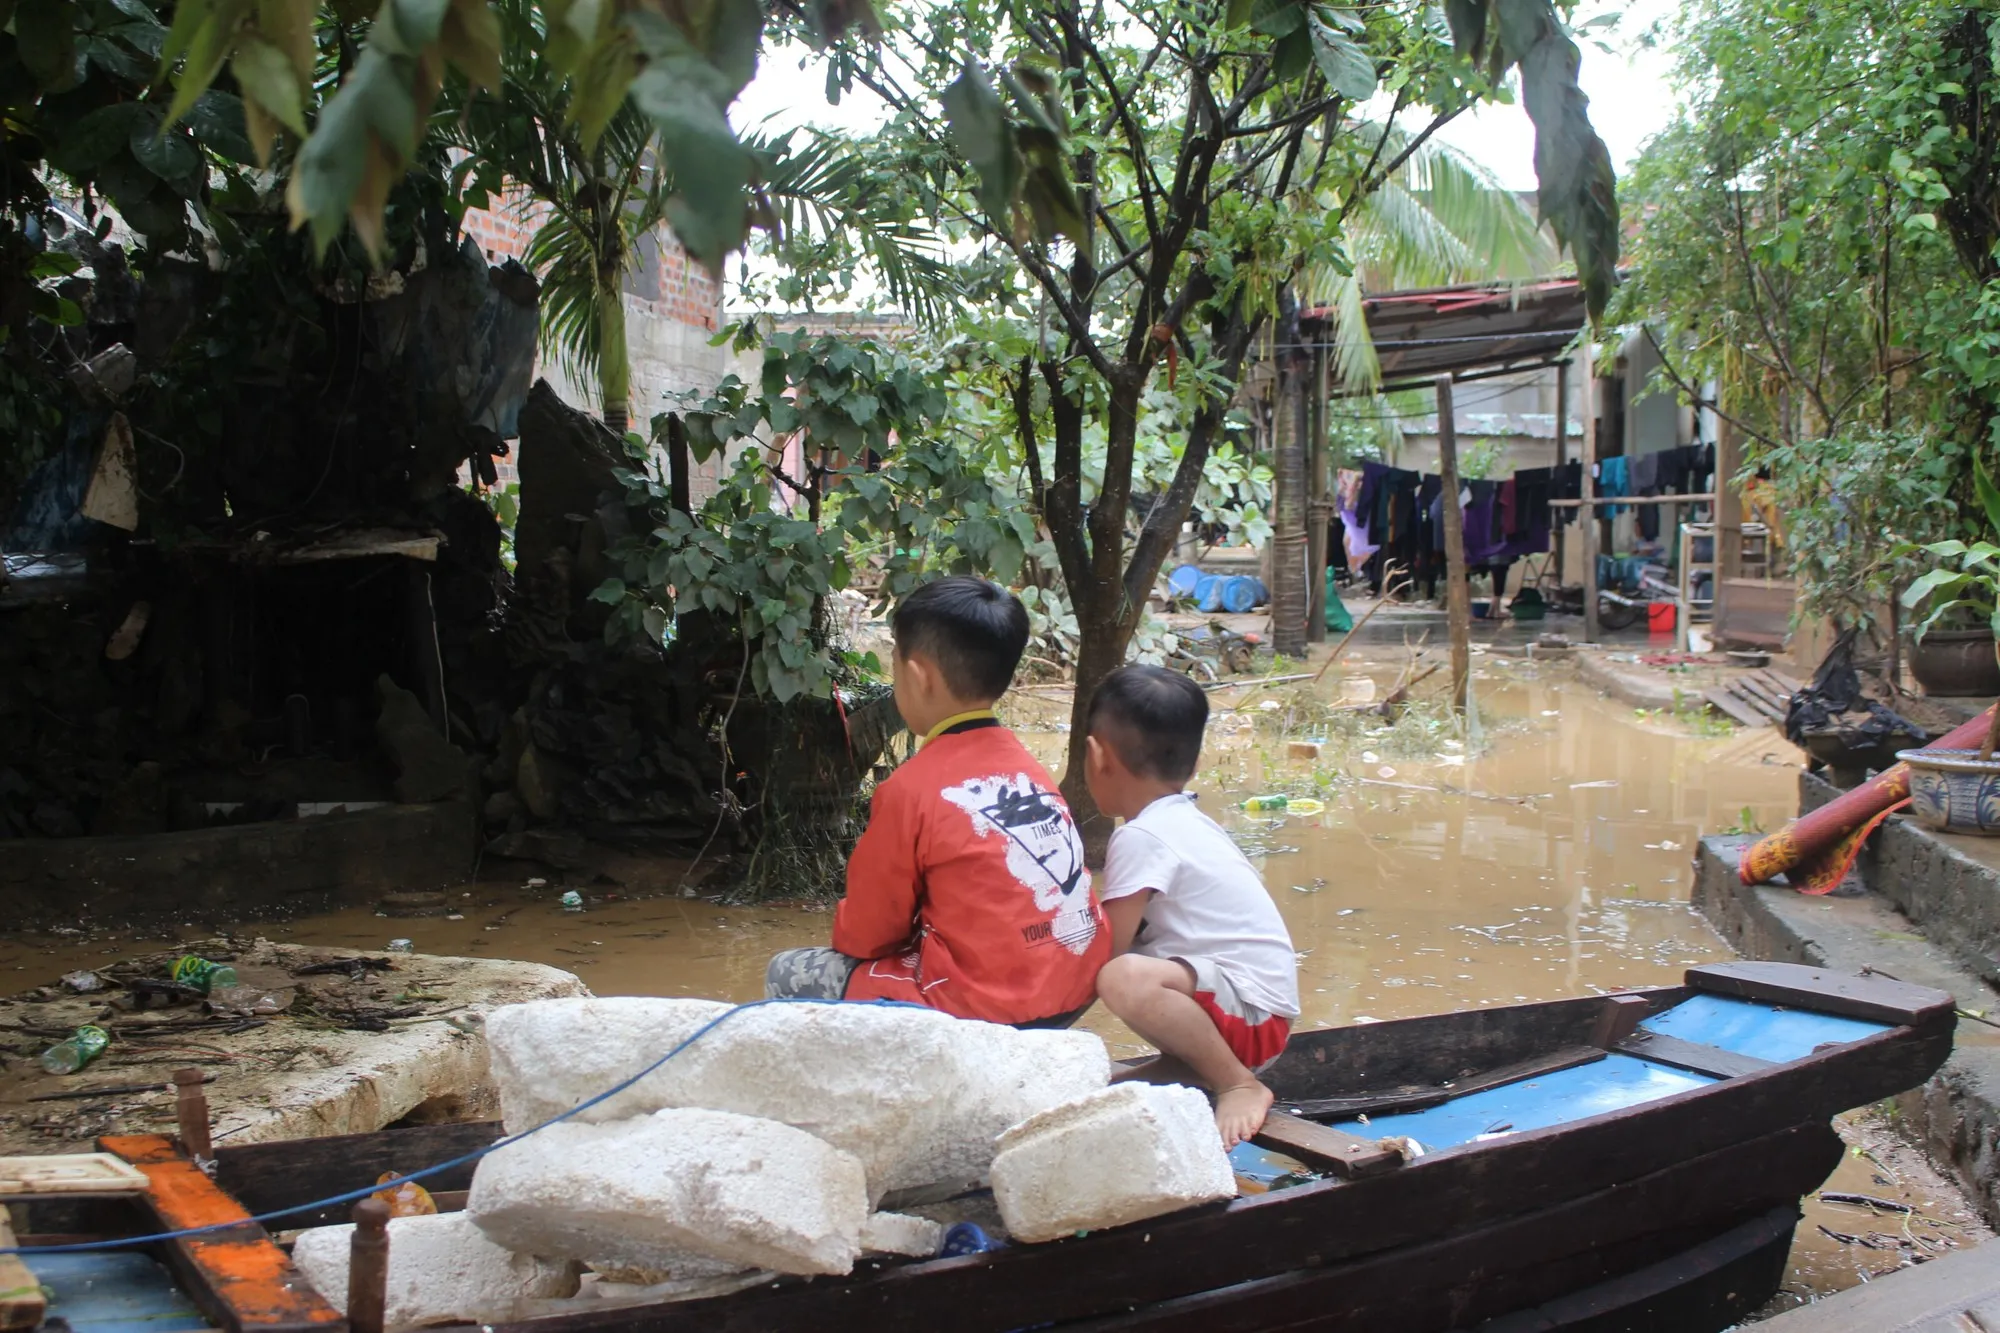 deux enfants sont assis sur un petit bateau dans un village inondé.